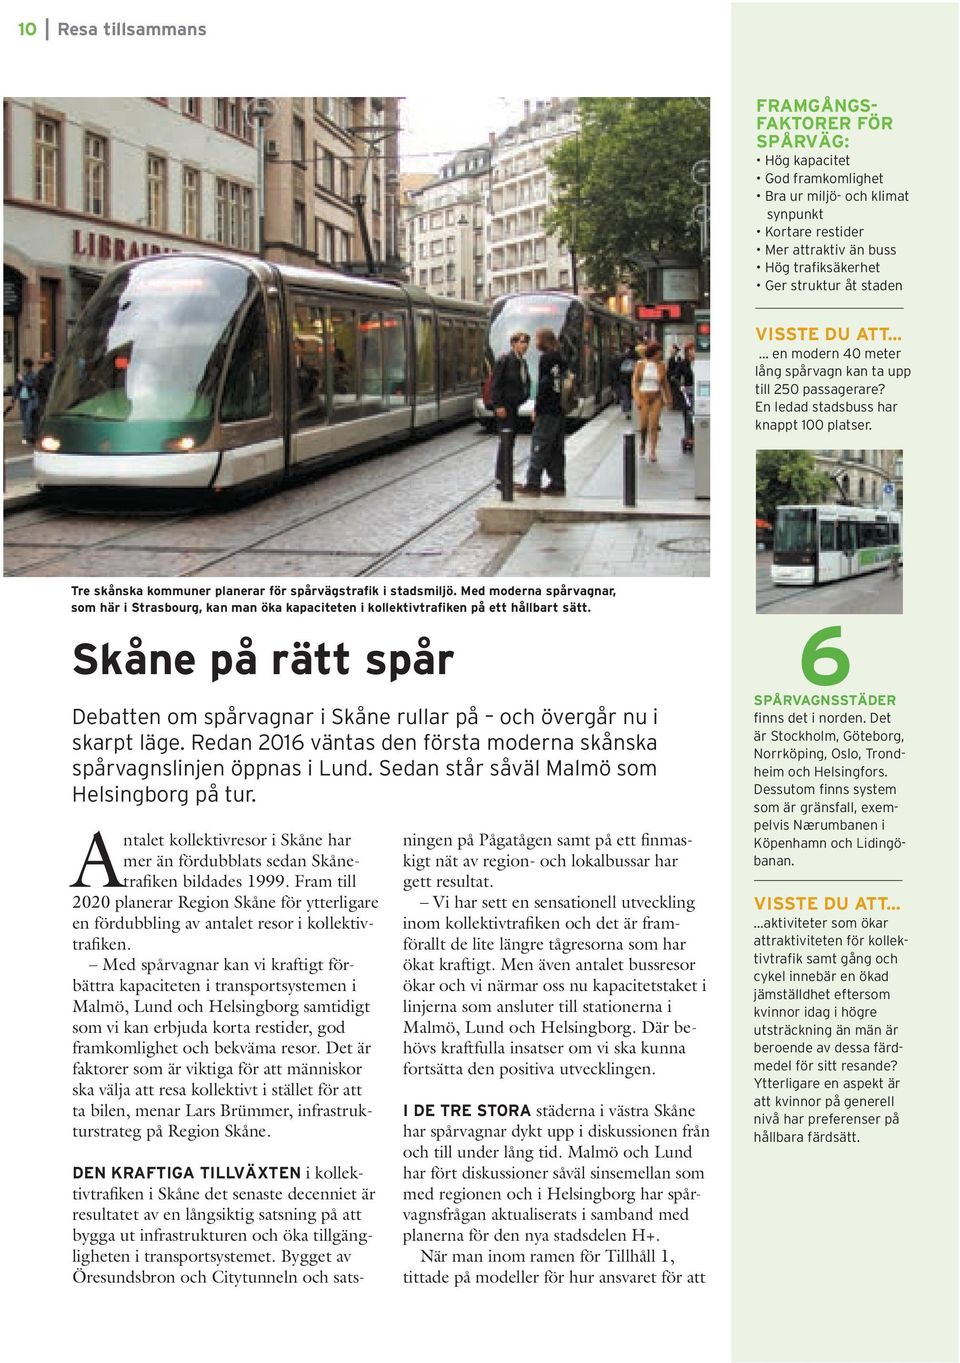 Med moderna spårvagnar, som här i Strasbourg, kan man öka kapaciteten i kollektivtrafiken på ett hållbart sätt.